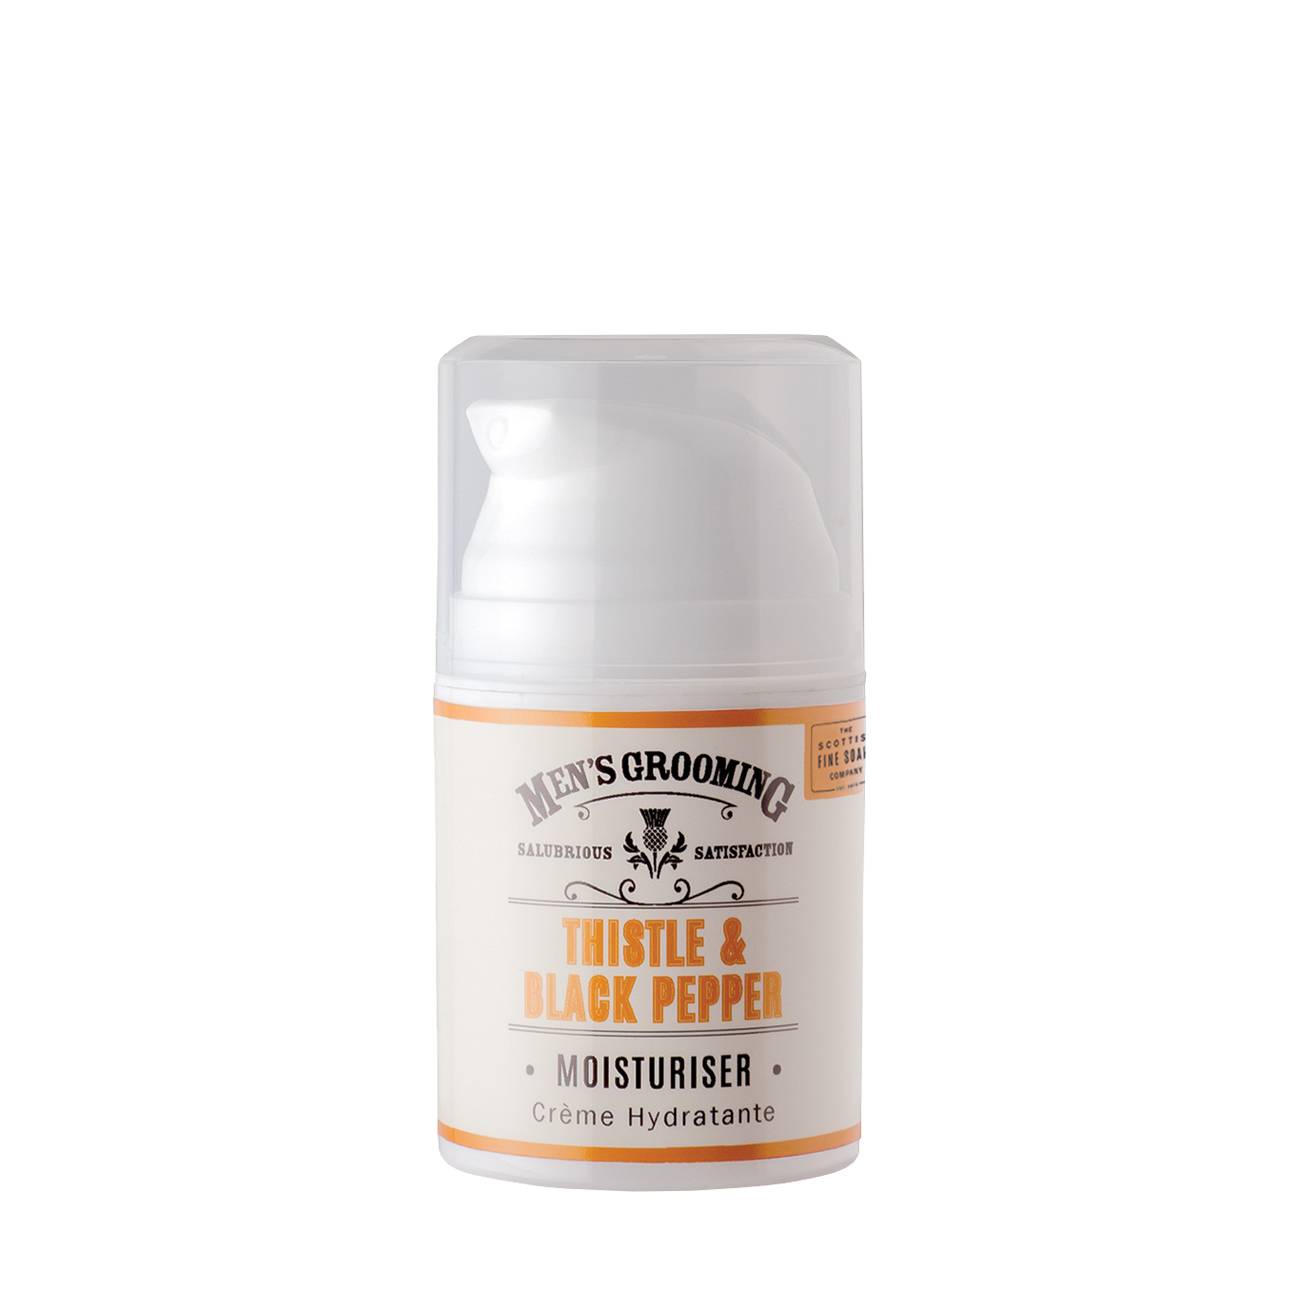 Thistle & Black Pepper Moisturiser 50 ml bestvalue imagine noua